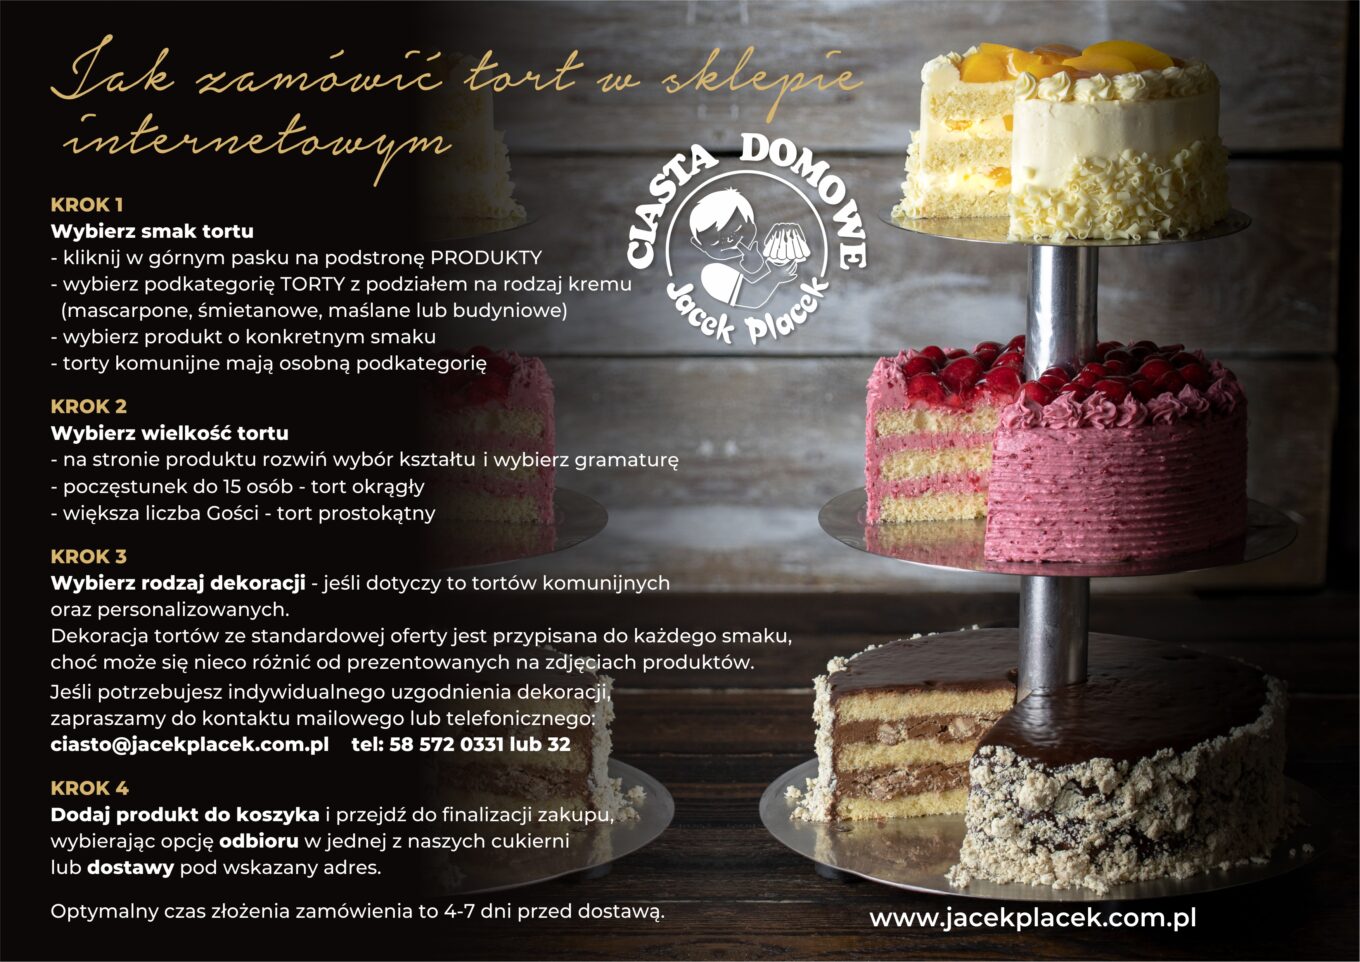 Jak zamawiać torty Cukiernia Jacek Placek to synonim smaku domowych ciast z naturalnych produktów.